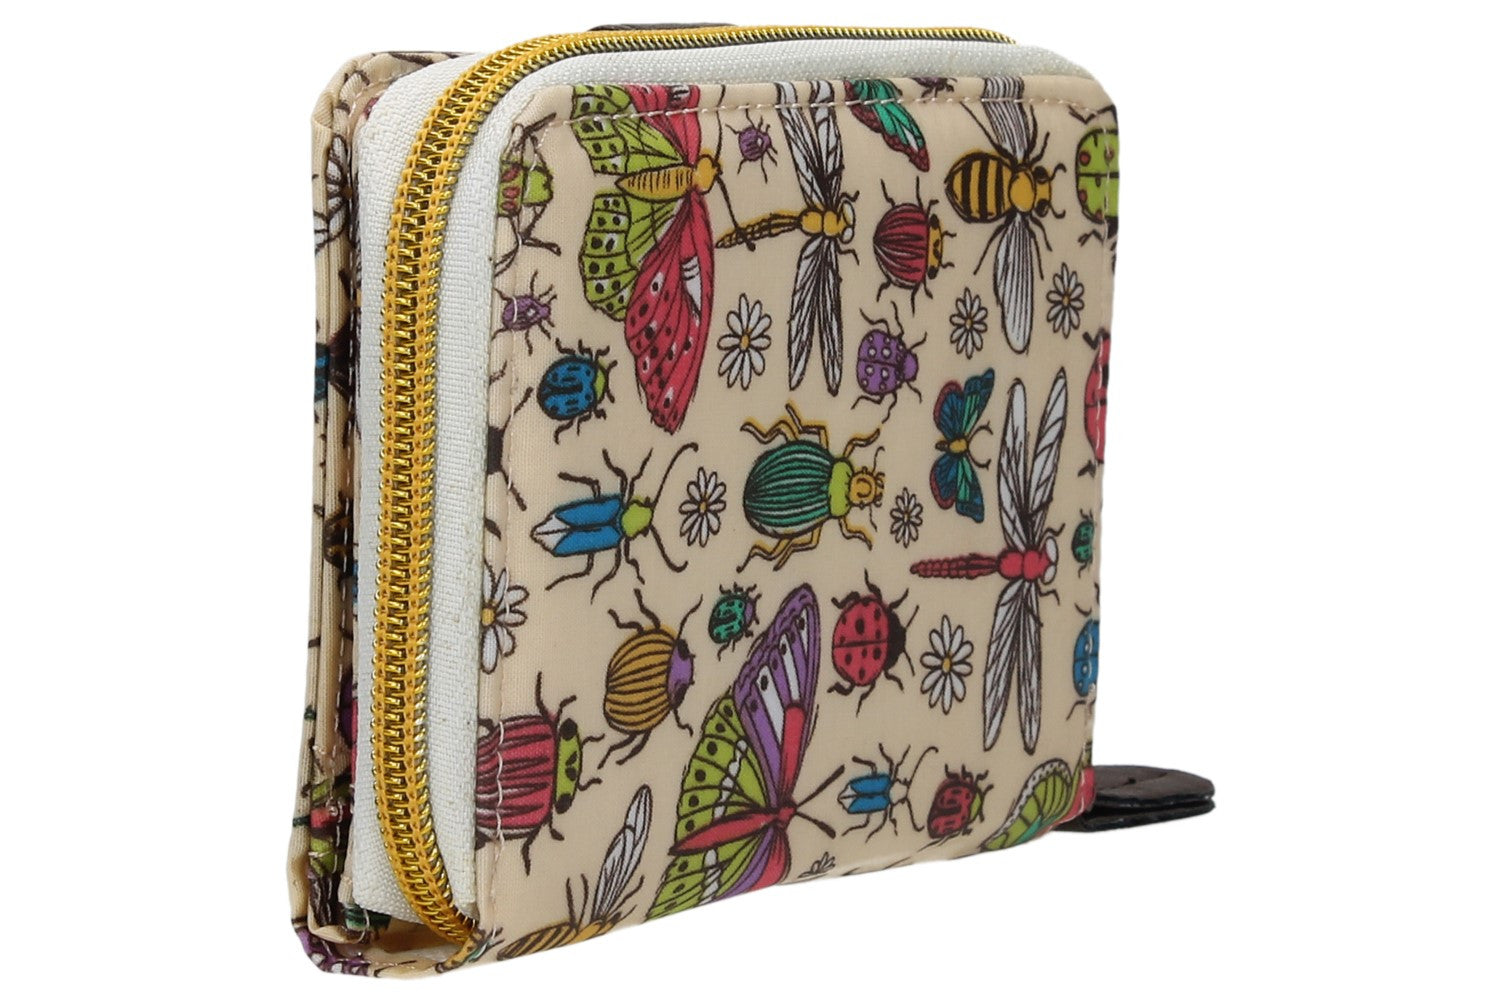 Swanky Swank Borella Butterfly & Bugs Folding PurseCheap Cute School Wallets Purses Bags Animal